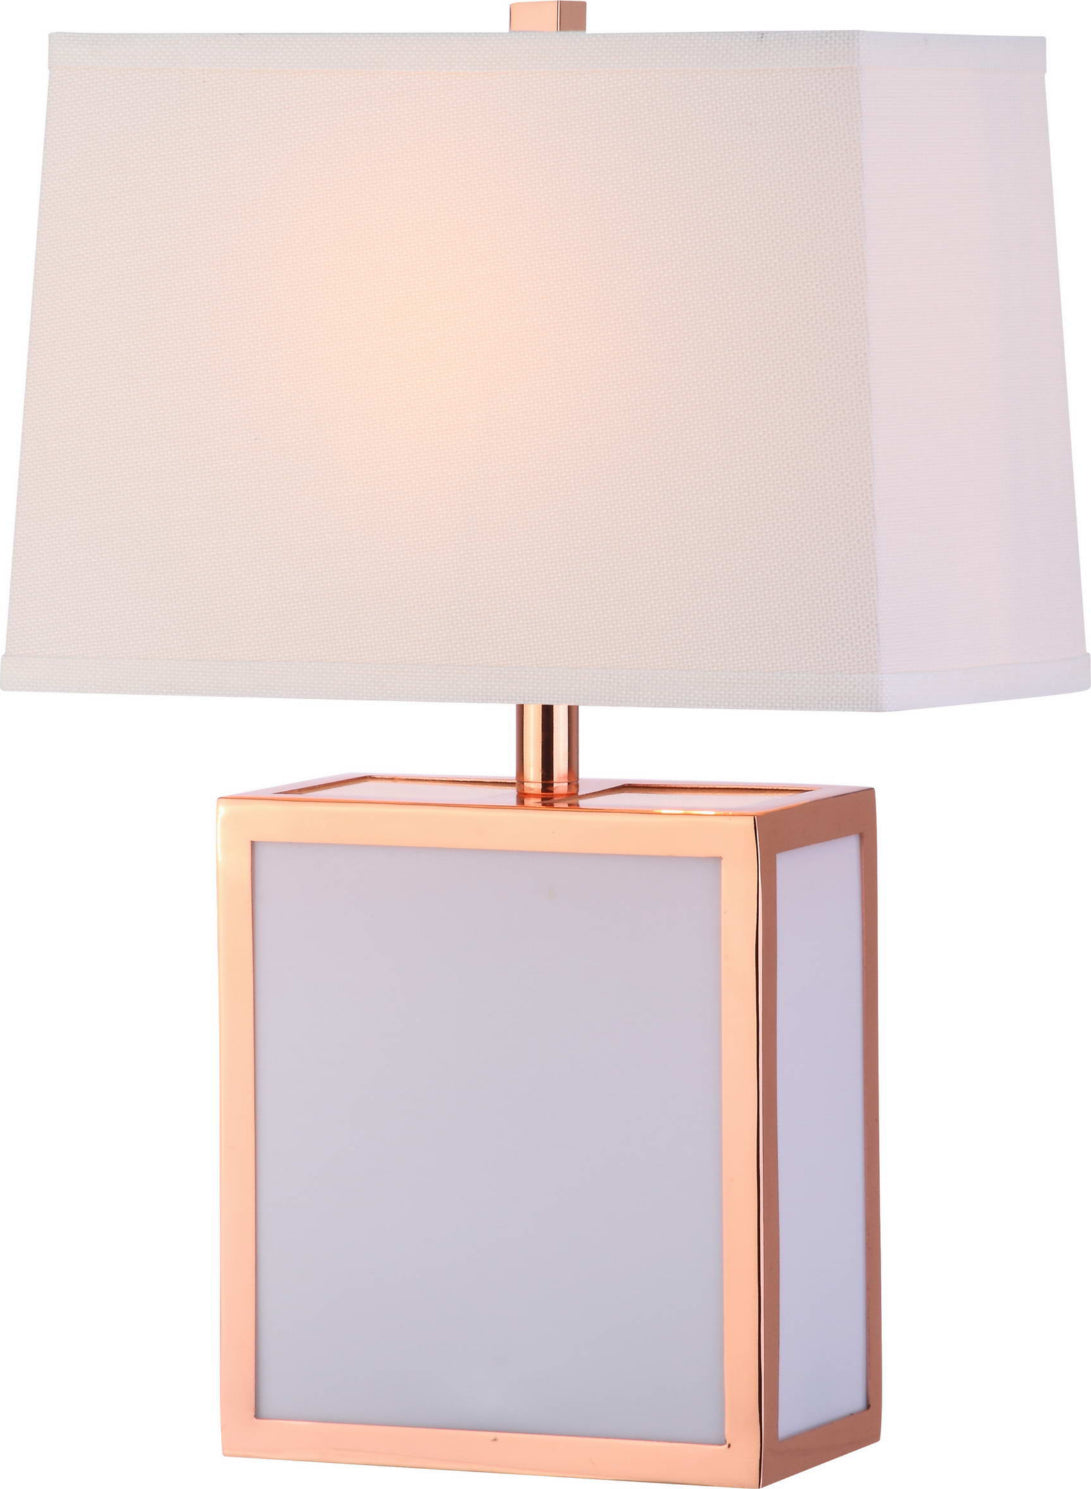 Safavieh Sayer Table Lamp Copper/White Mirror main image